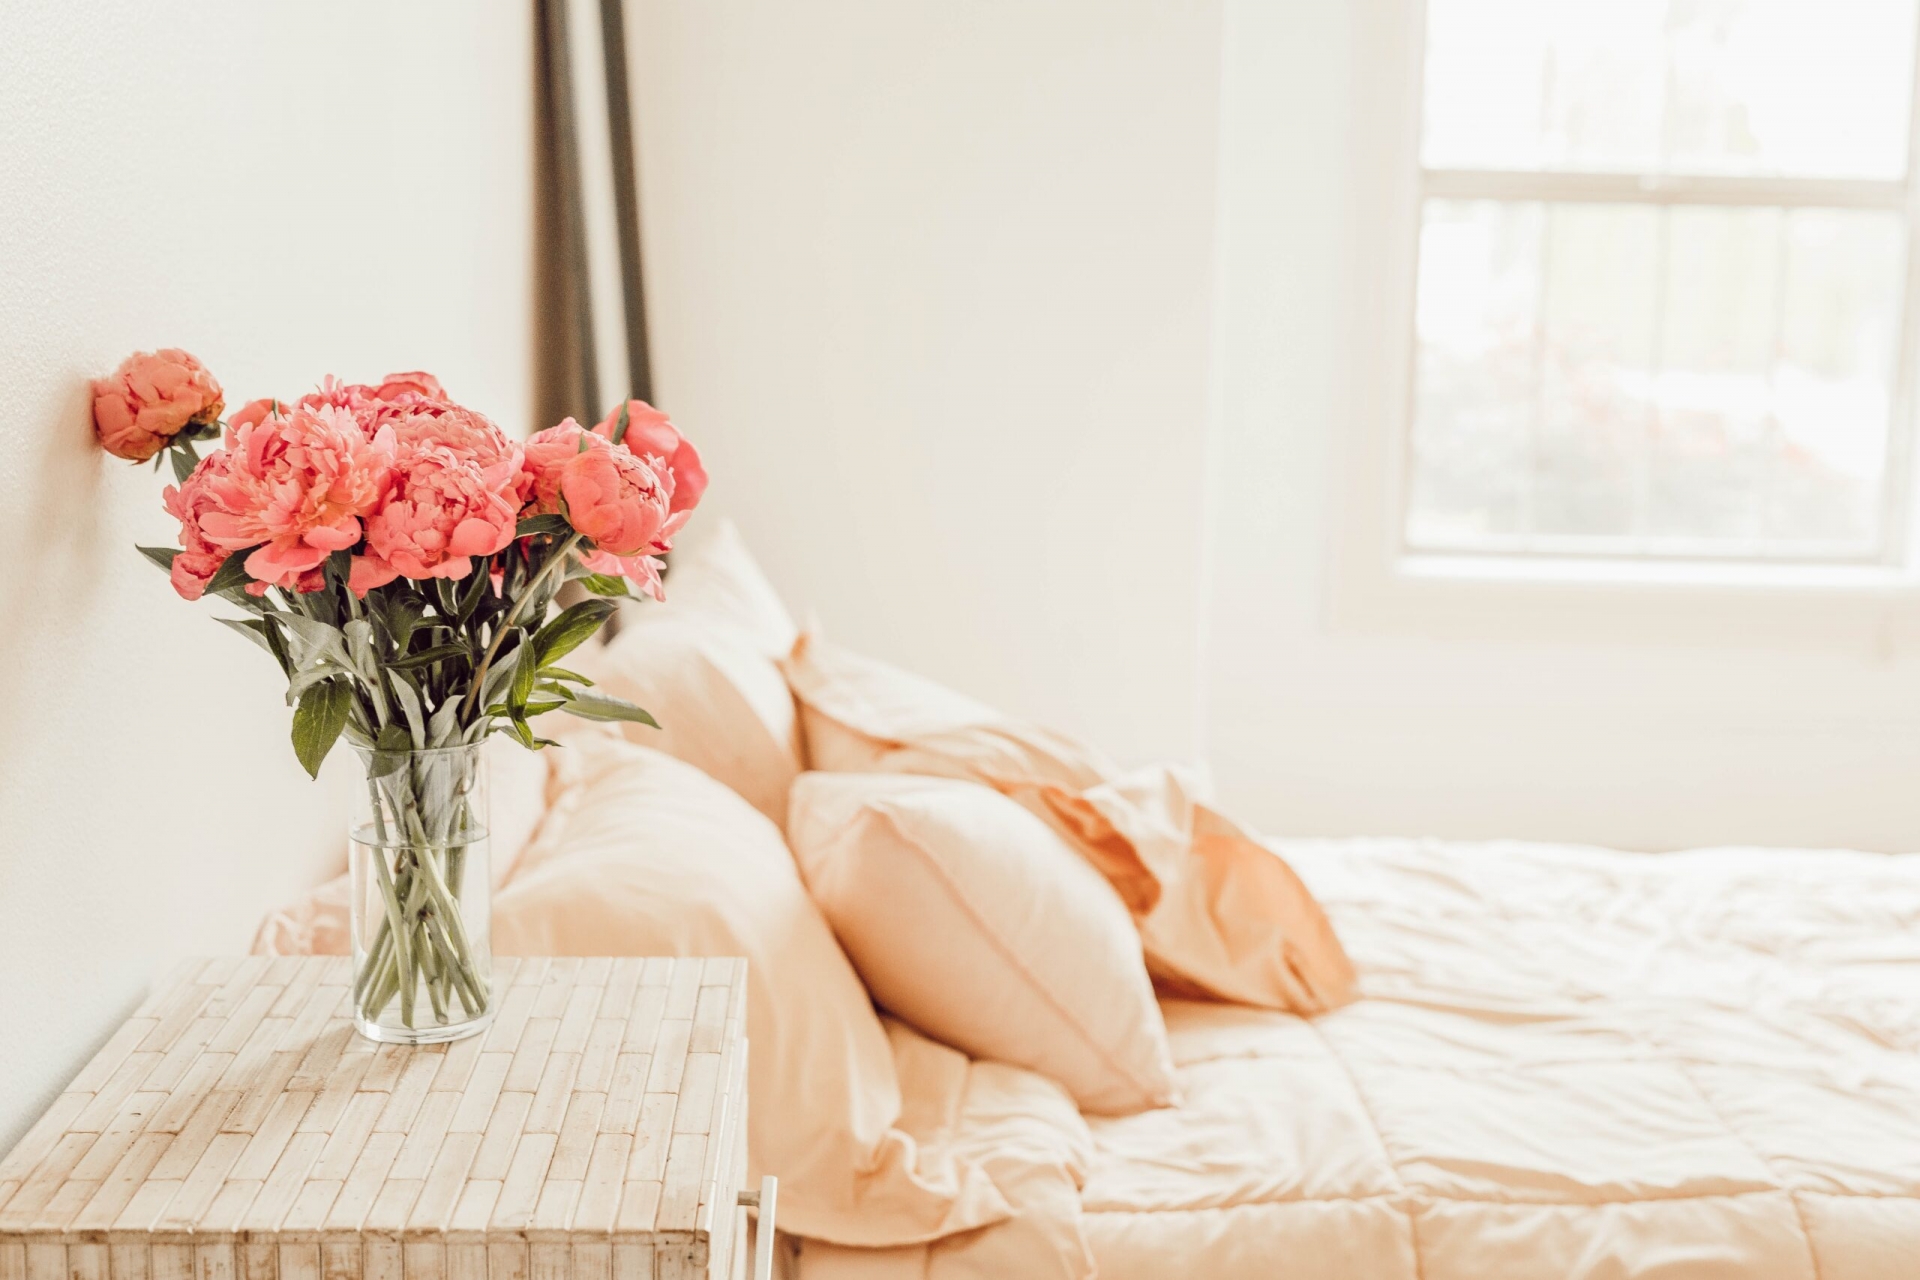 Những loài hoa có màu sắc nhã nhặn, ít mùi thơm sẽ thích hợp để bạn trưng bày trong phòng ngủ.